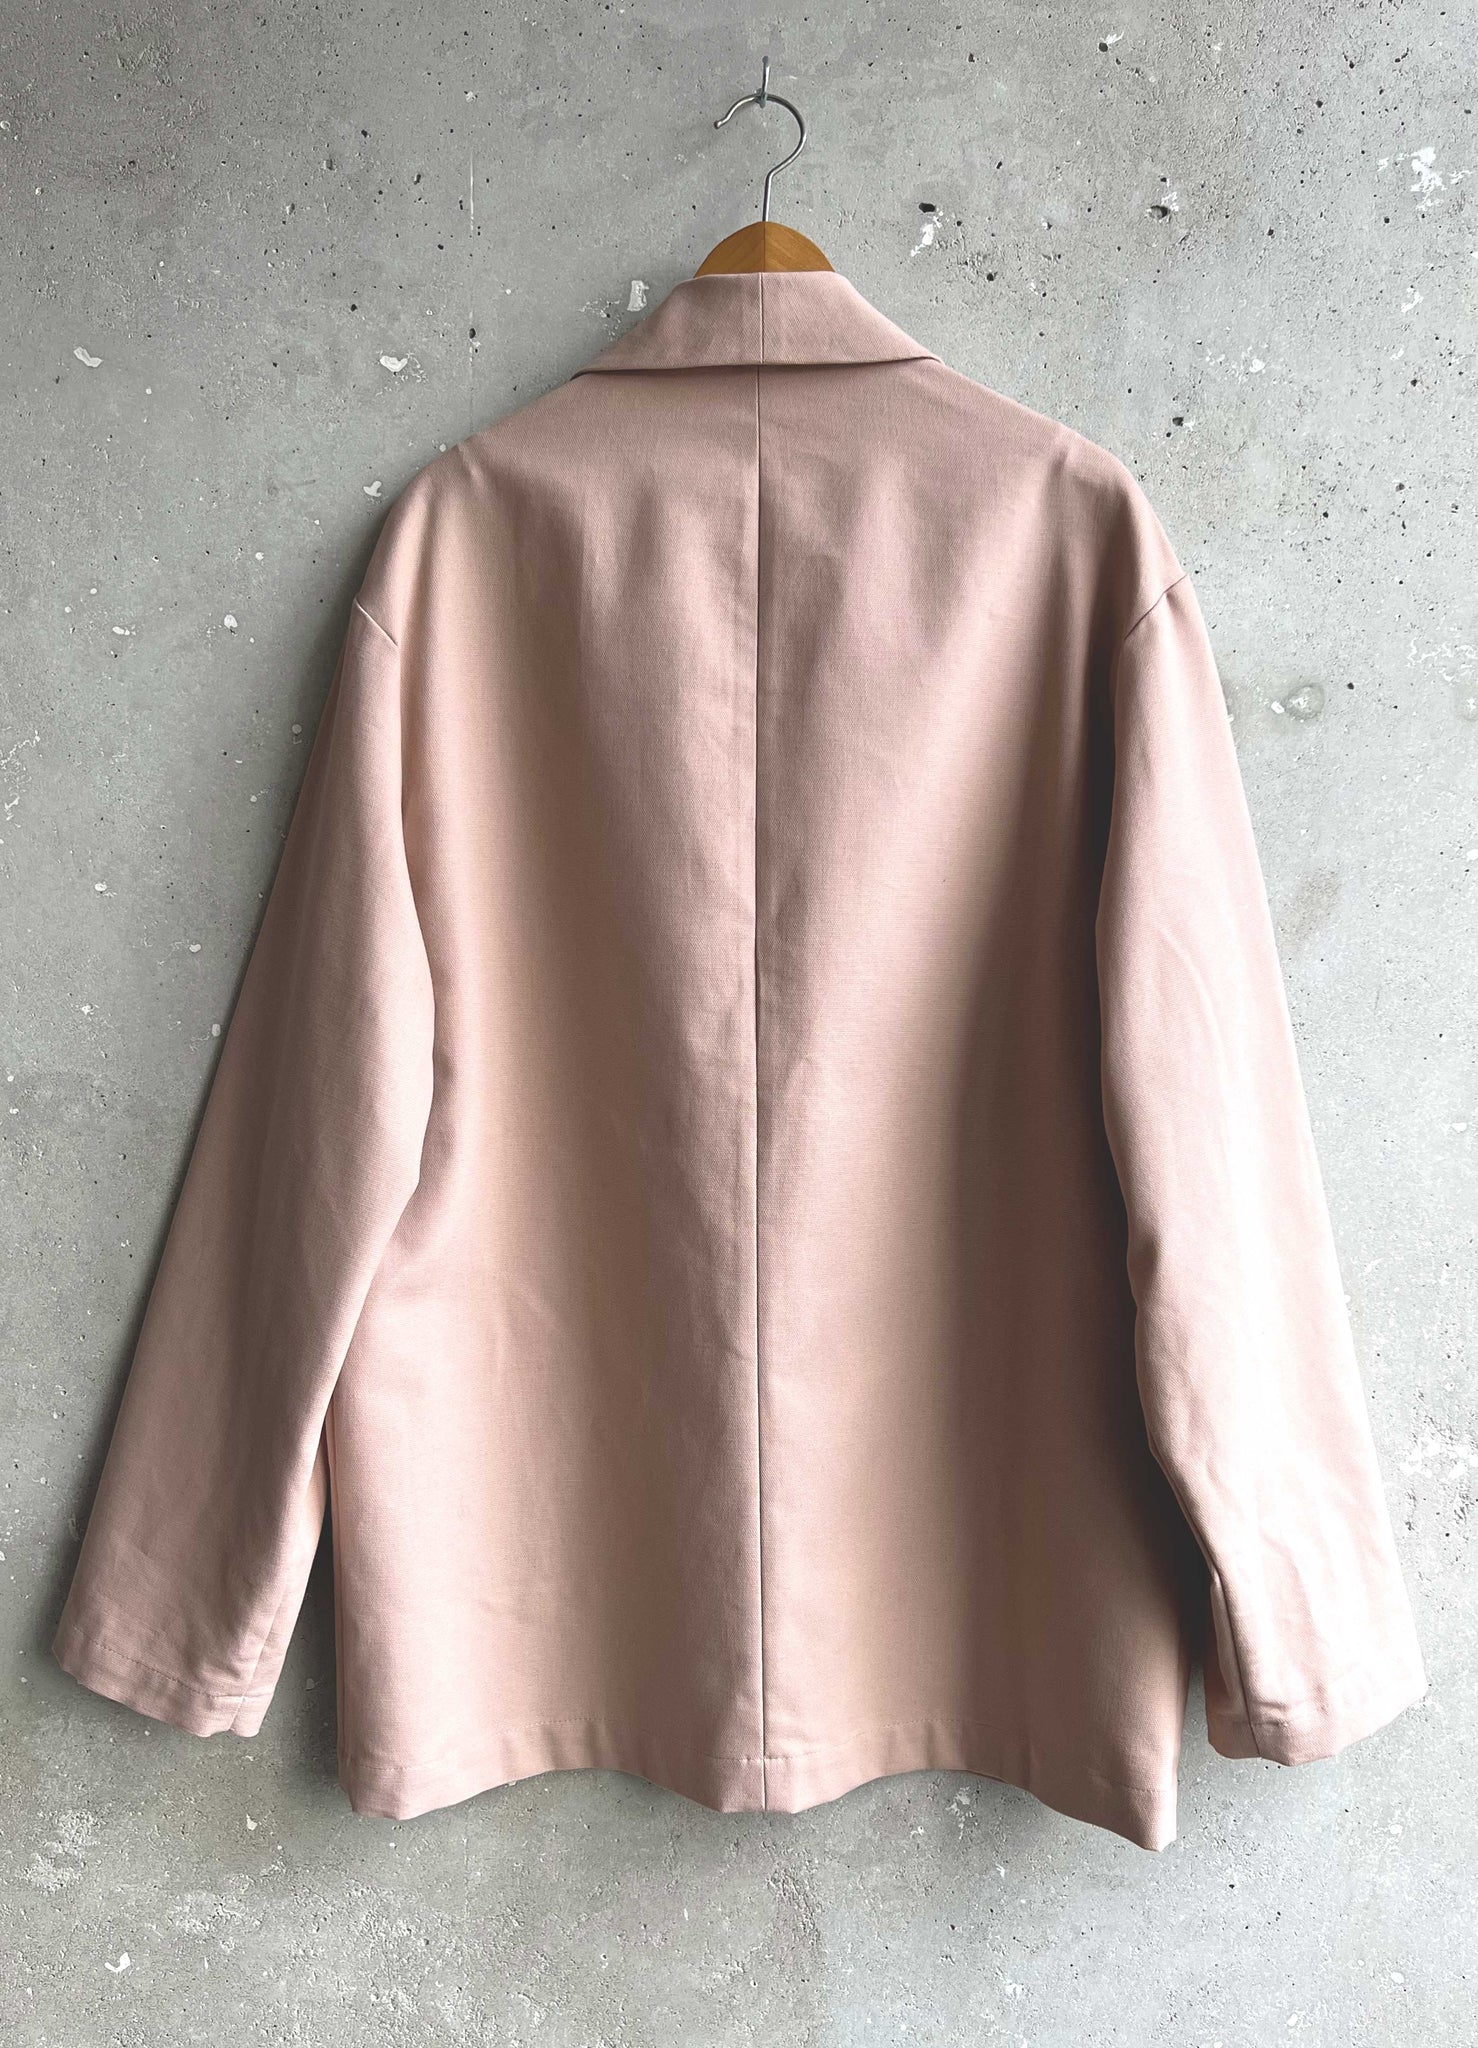 Soft Suit jacket pink canvas